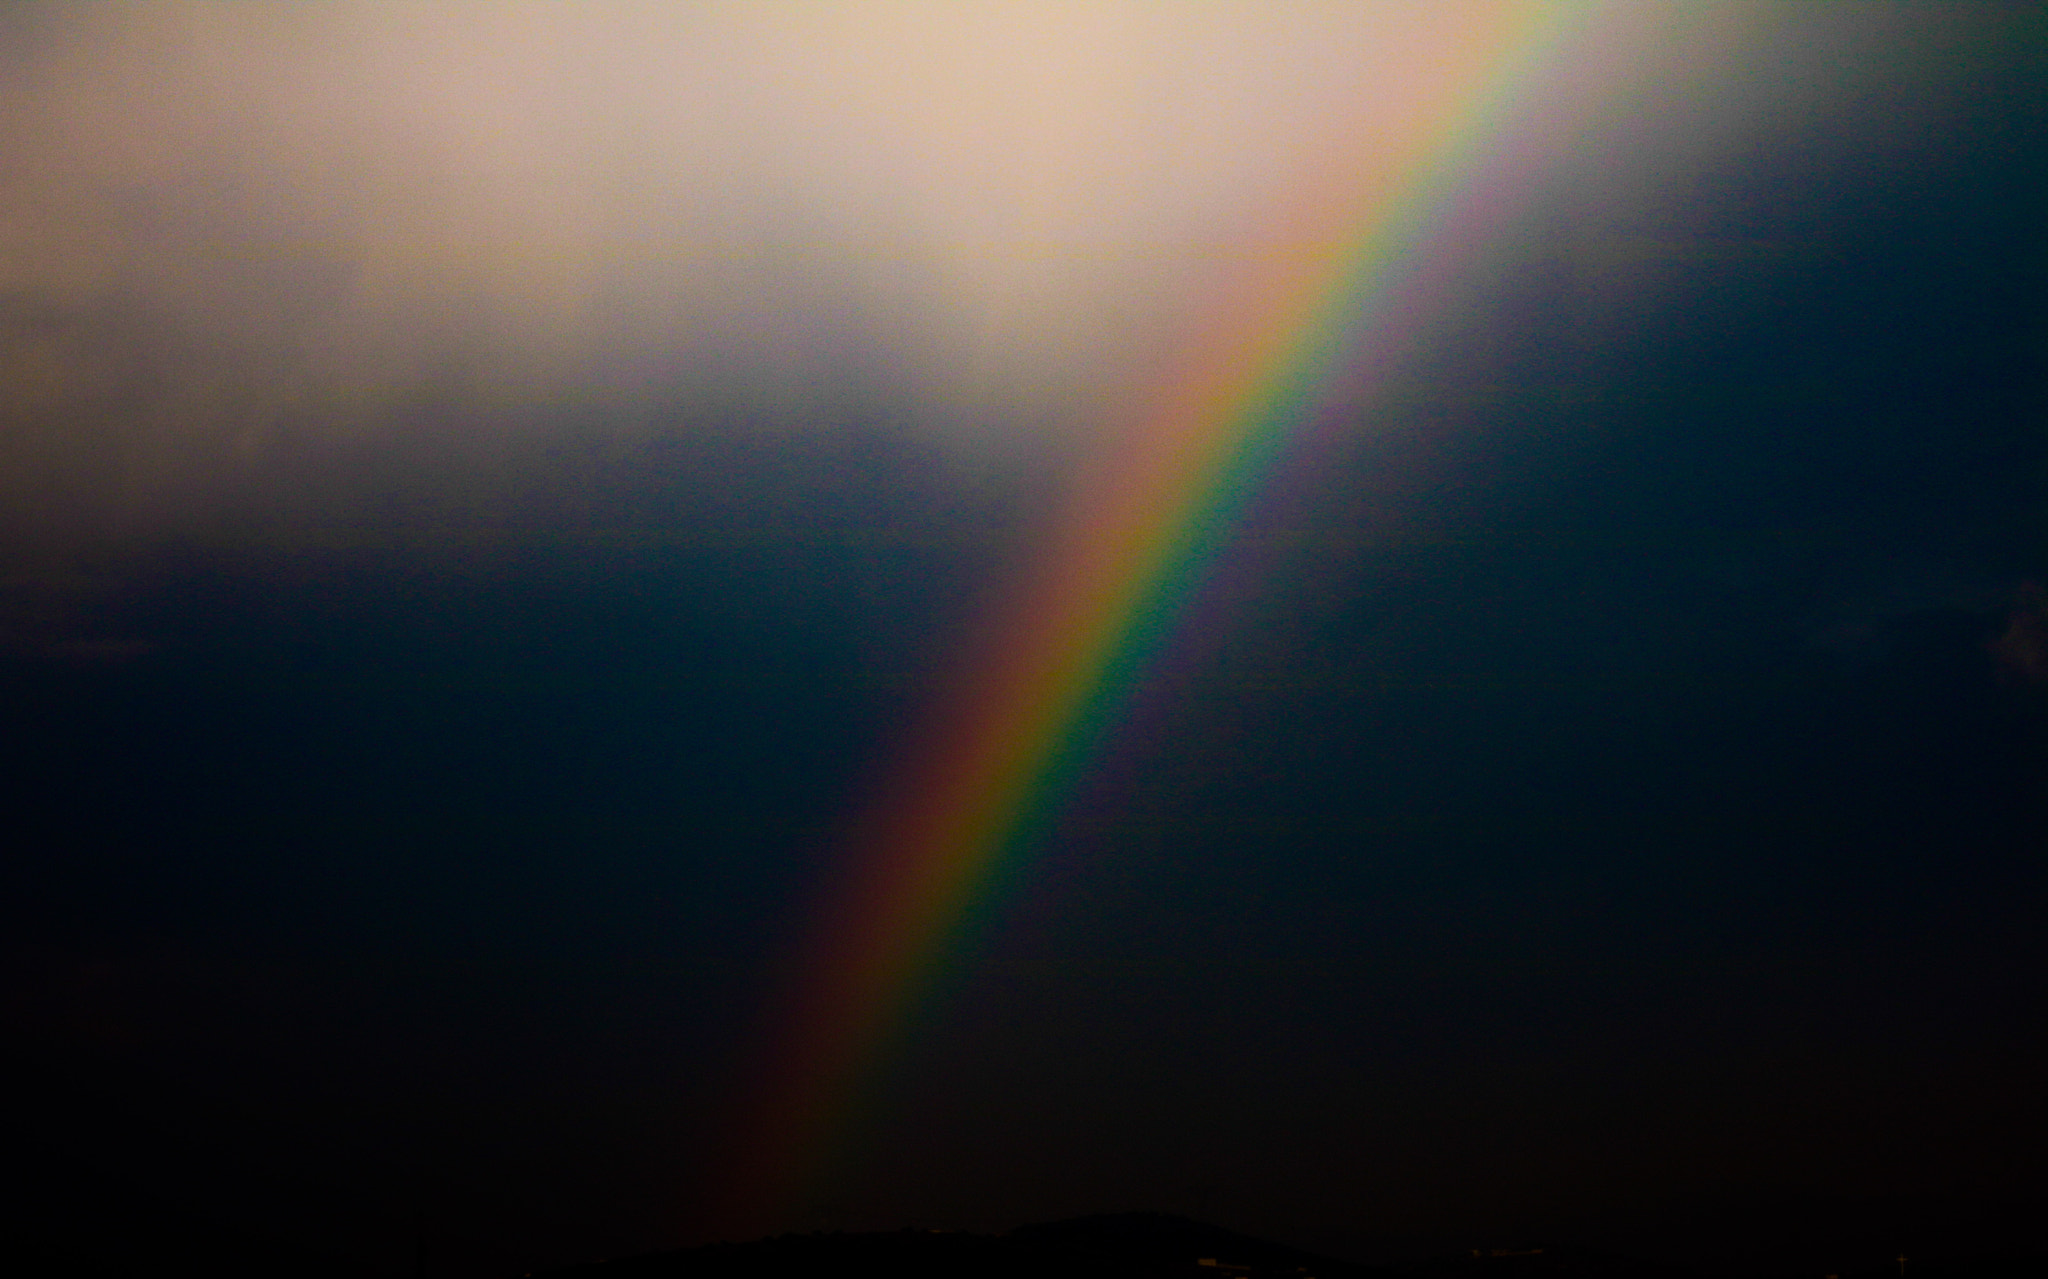 Canon EOS 750D (EOS Rebel T6i / EOS Kiss X8i) + EF75-300mm f/4-5.6 sample photo. Arcoiris-rainbow photography